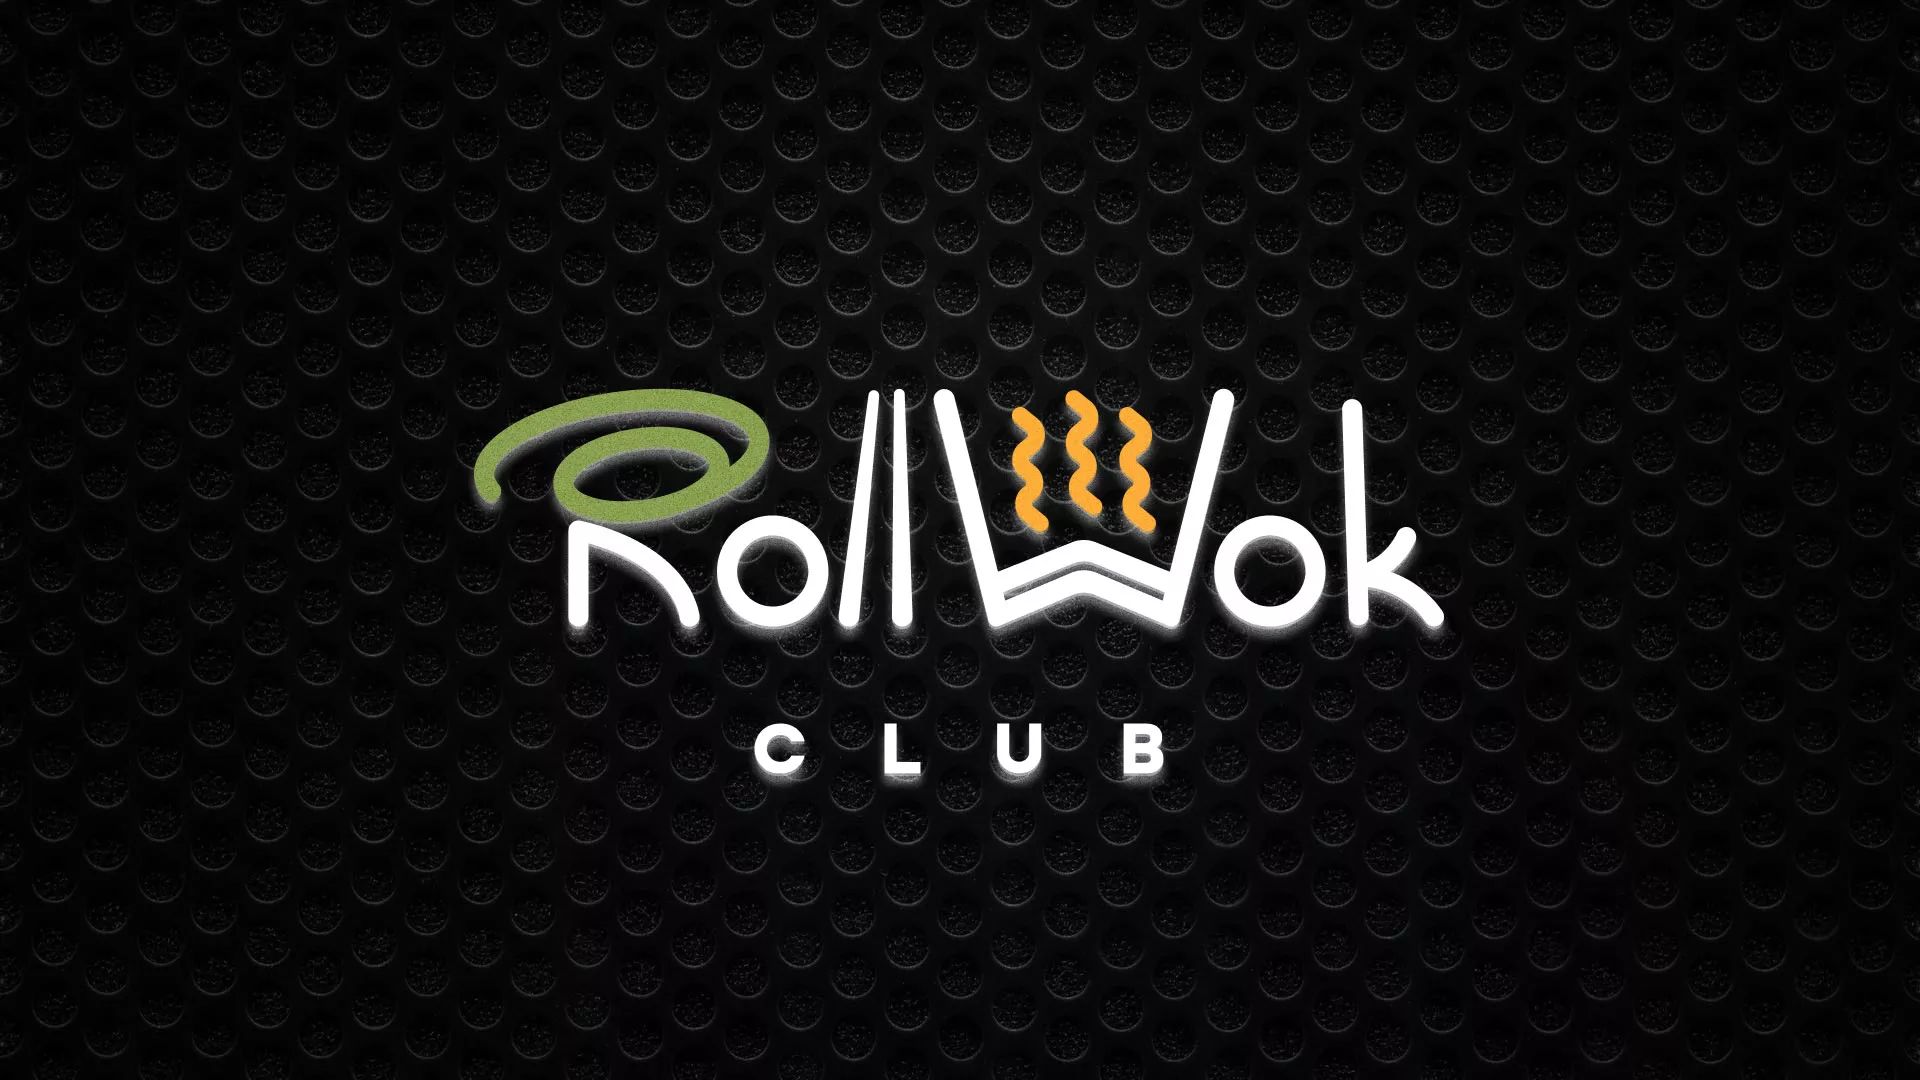 Брендирование торговых точек суши-бара «Roll Wok Club» в Саратове